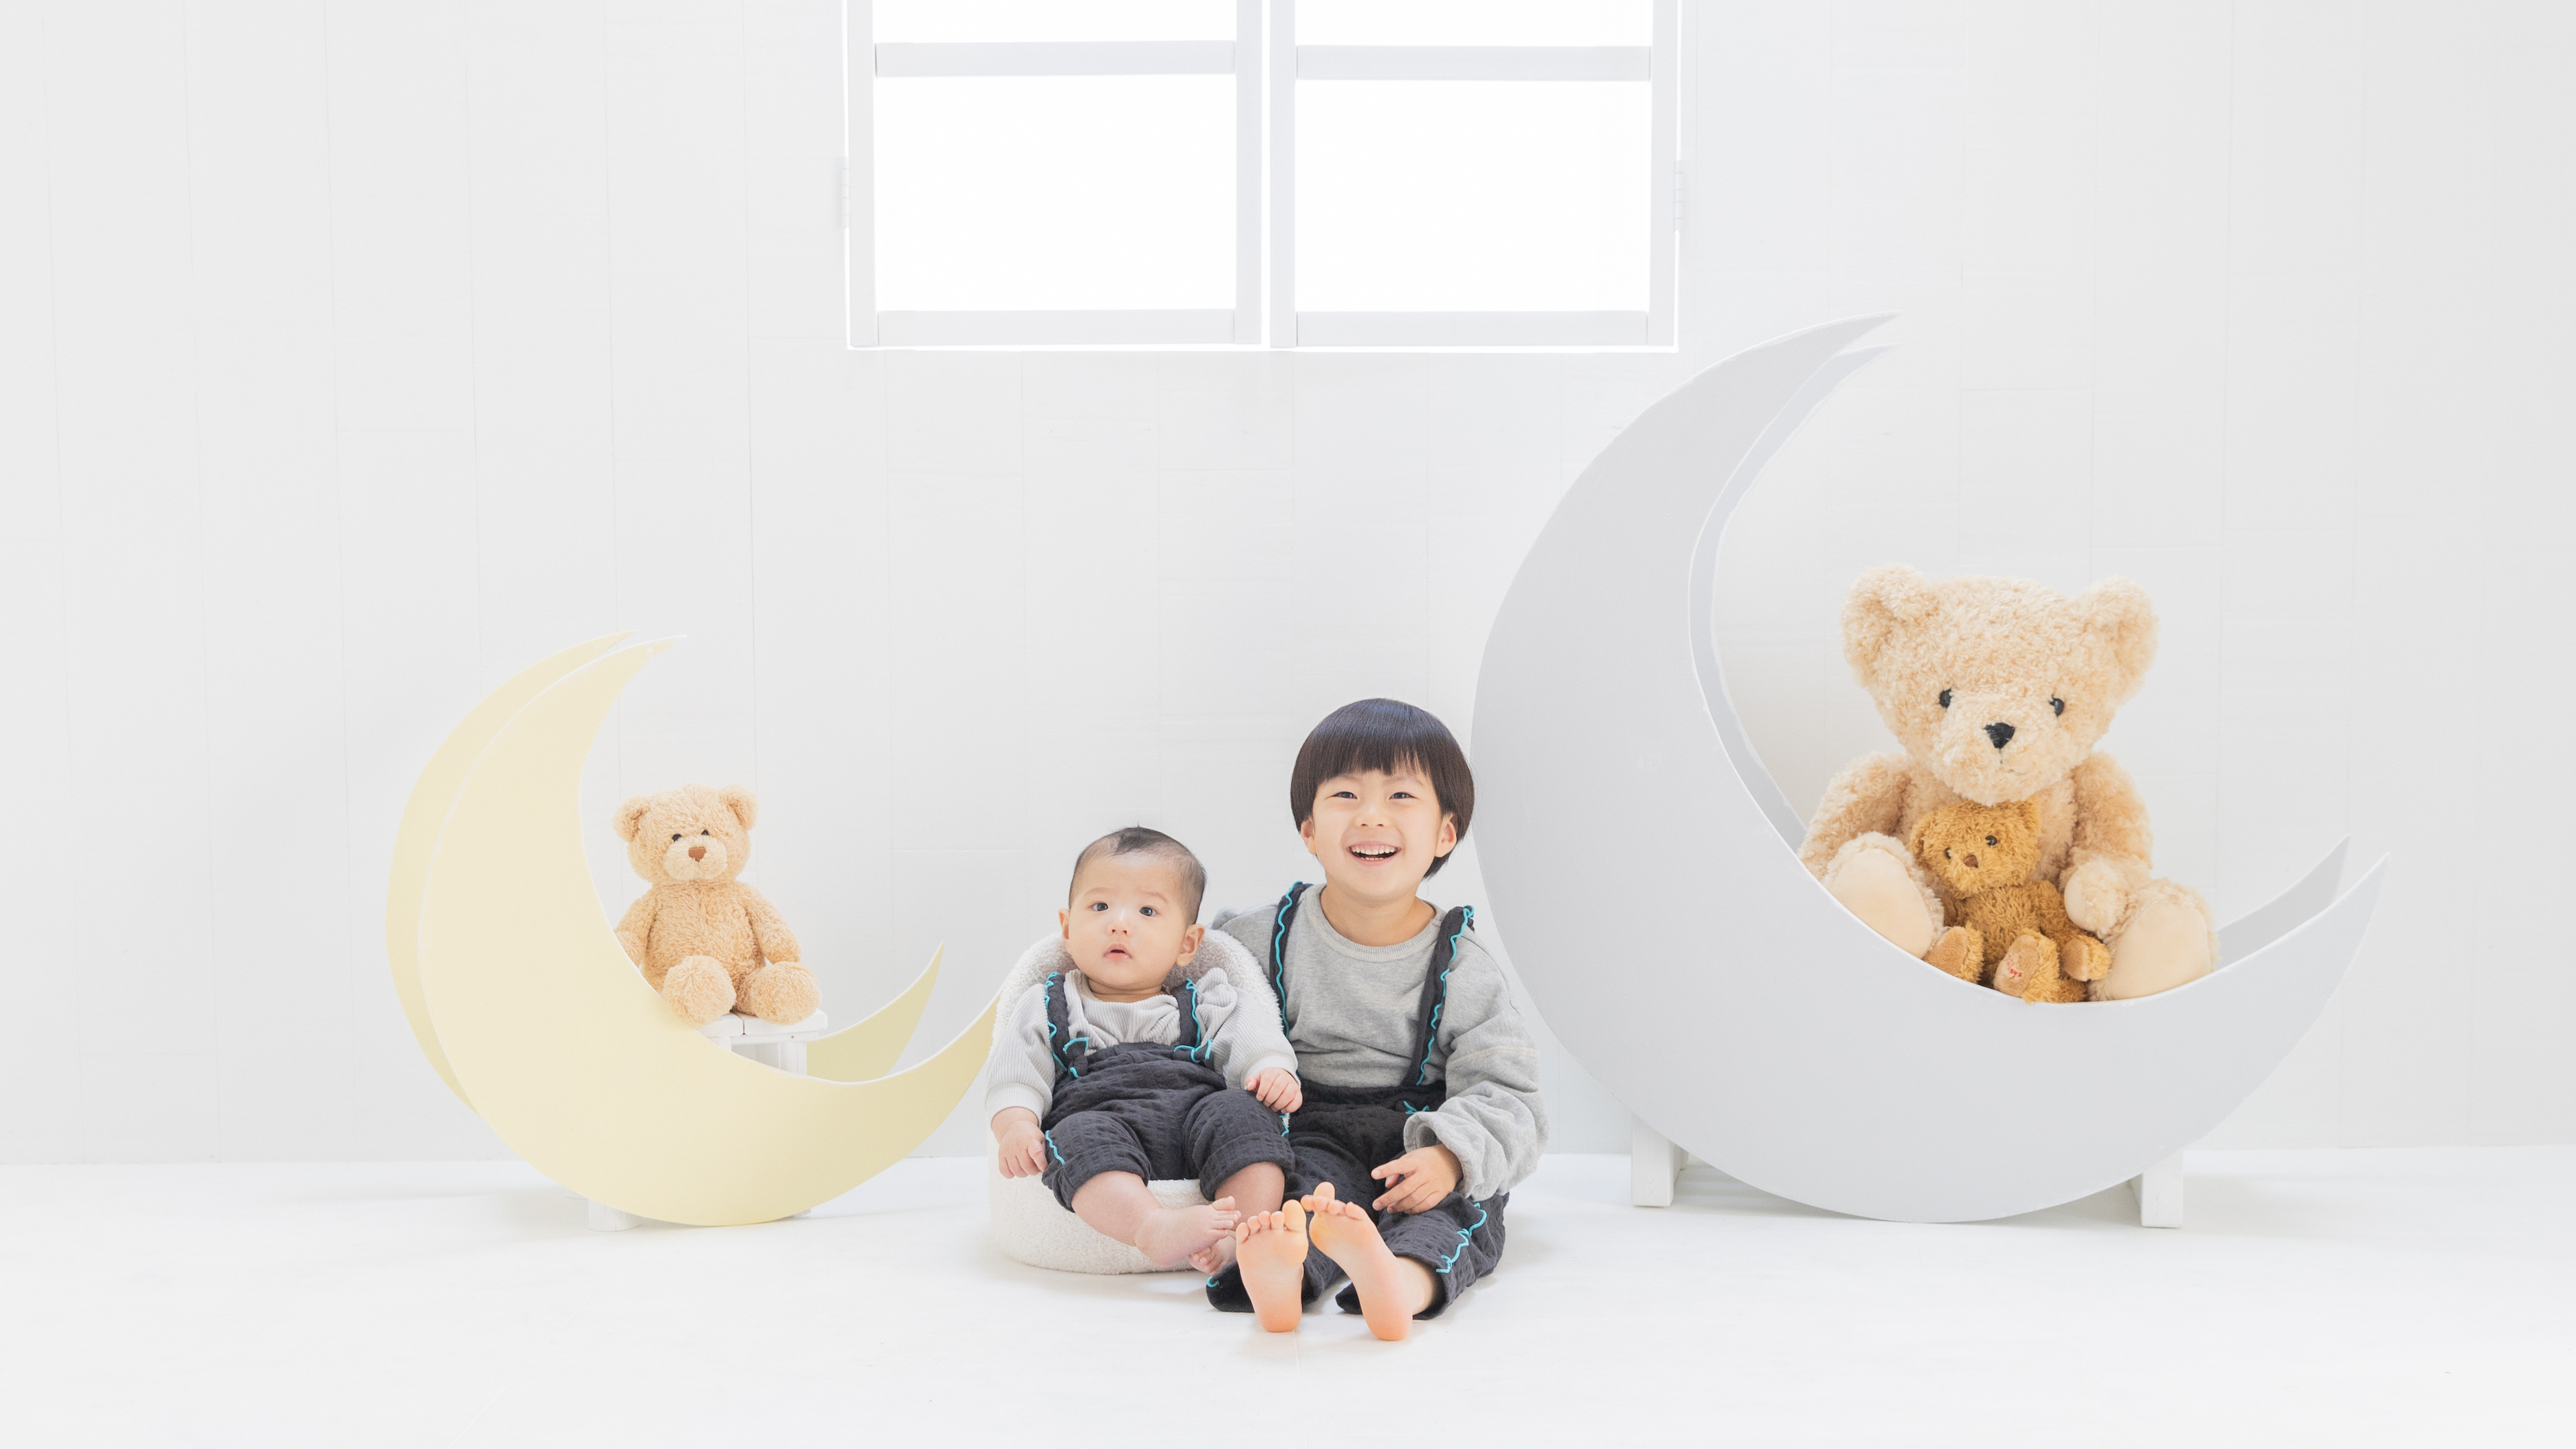 千葉のフォトスタジオで子供写真 家族写真 七五三撮影なら一軒家型のフォトスタジオピクチャー Picture